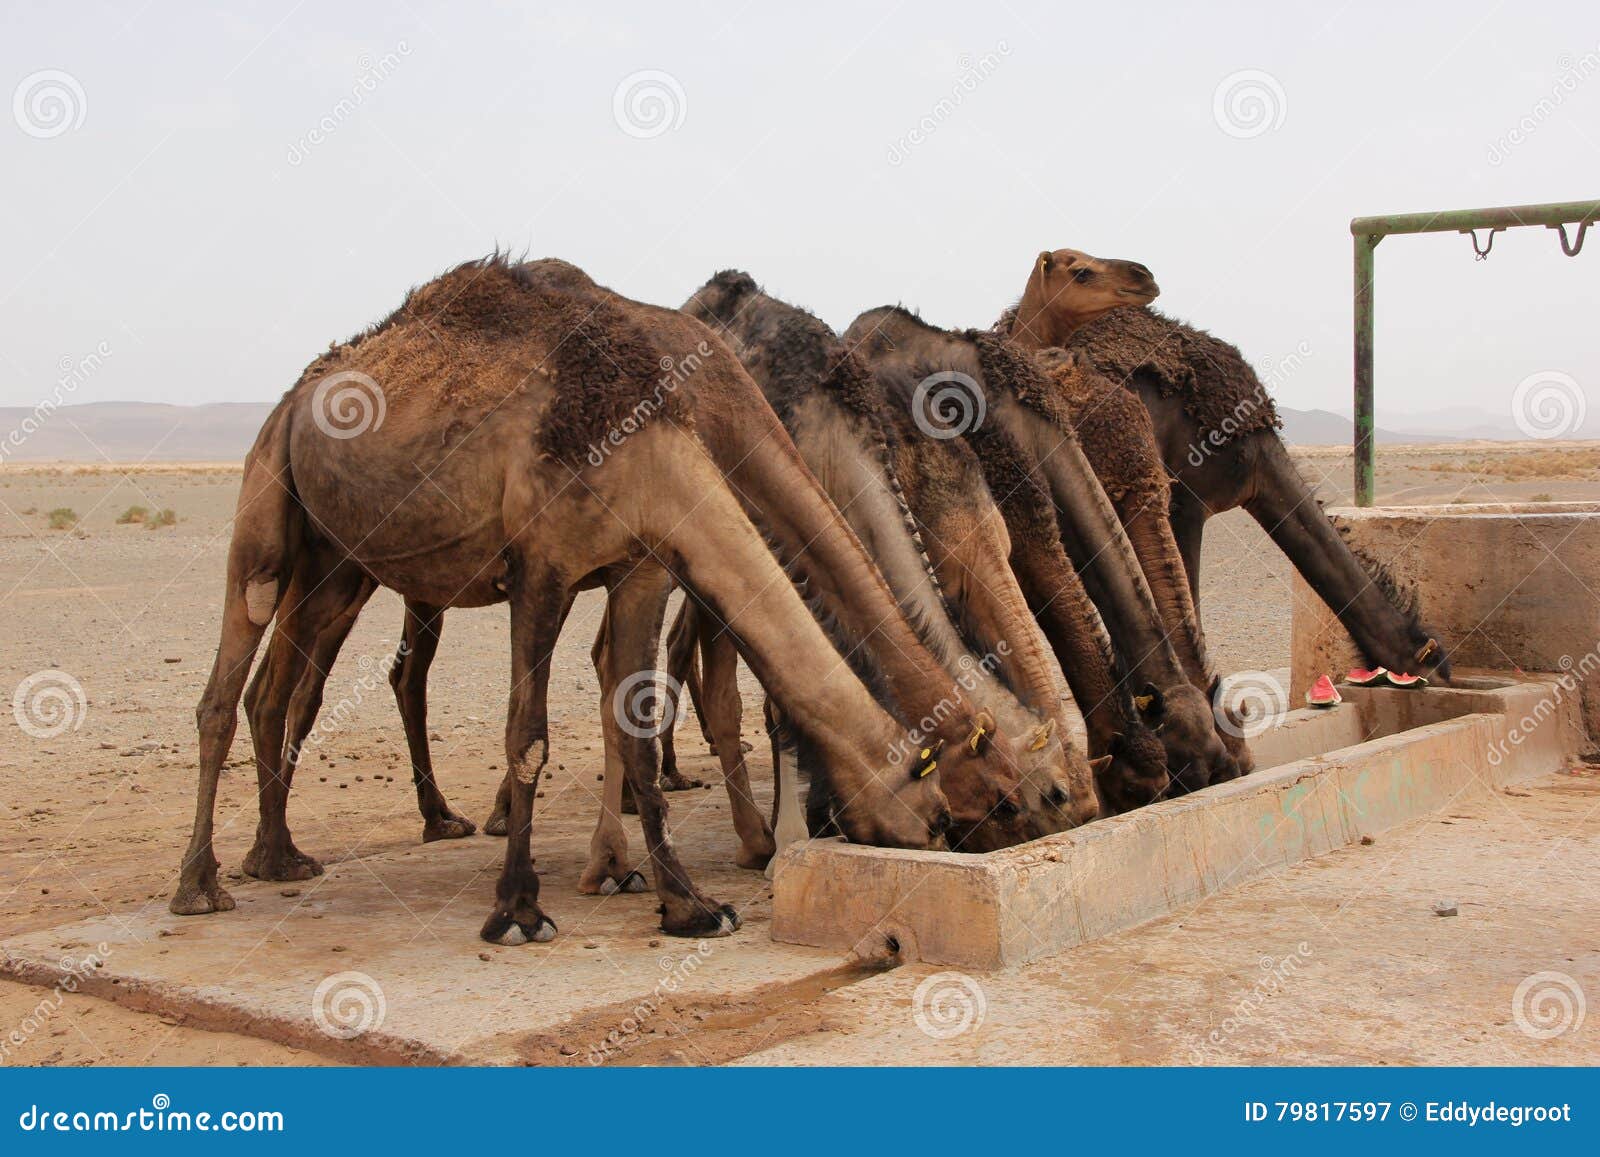 Где хранит воду верблюд: Зачем верблюду горбы? Чем питается верблюд? Сколько верблюд может жить без воды